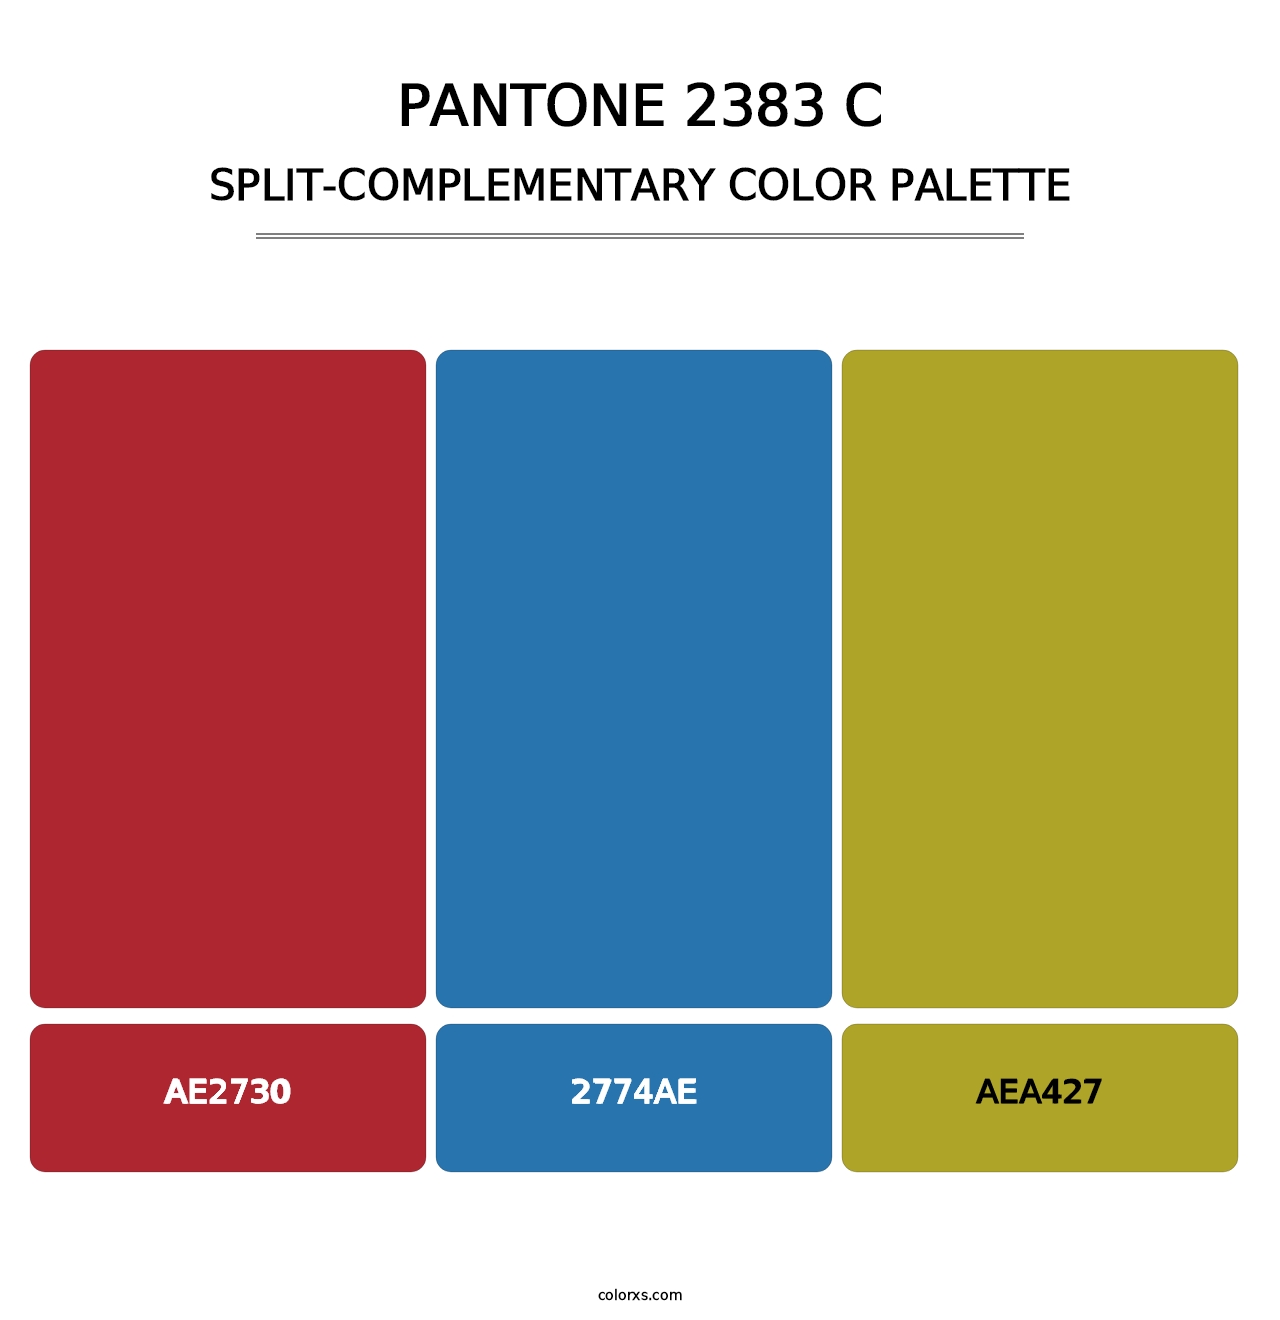 PANTONE 2383 C - Split-Complementary Color Palette